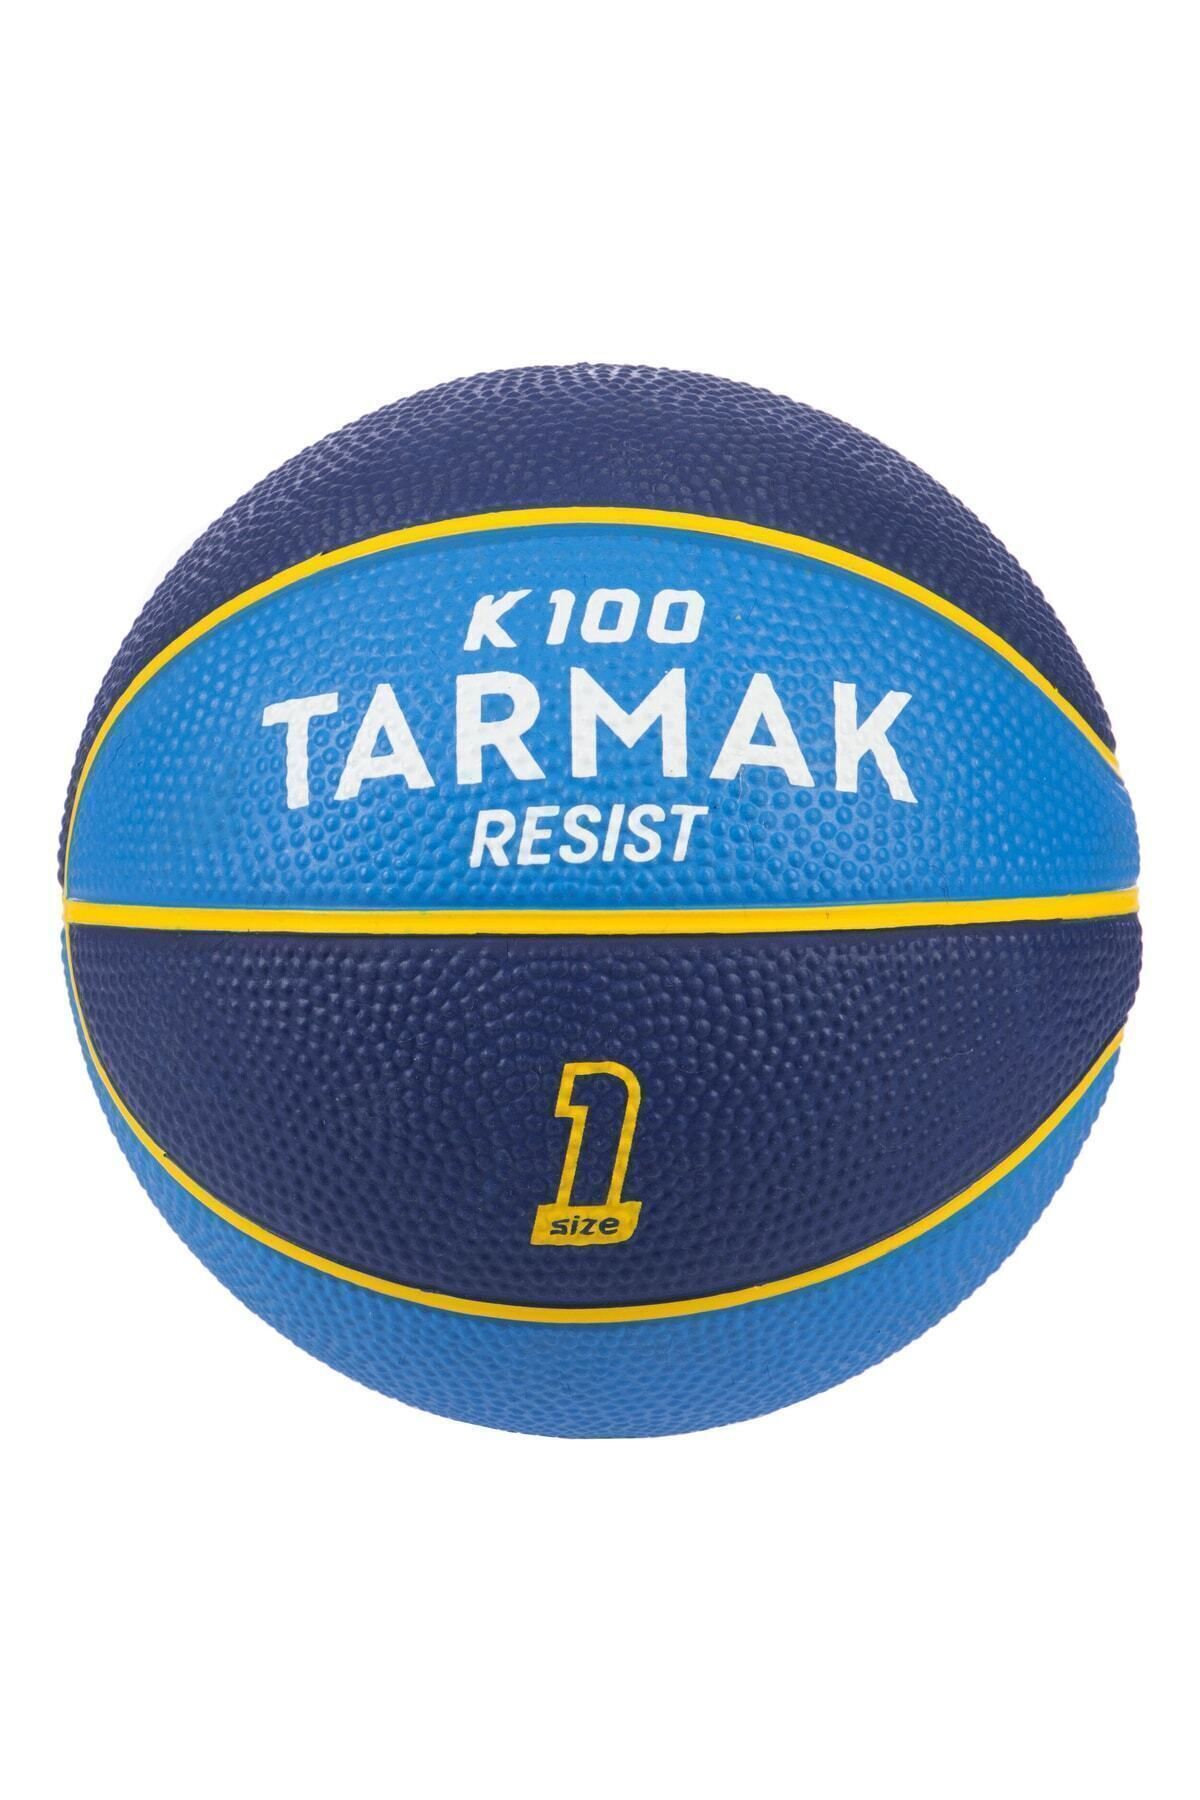 Decathlon Tarmak Mini Basketbol Topu - 1 Numara - Sarı / Mor - K100k100mavi